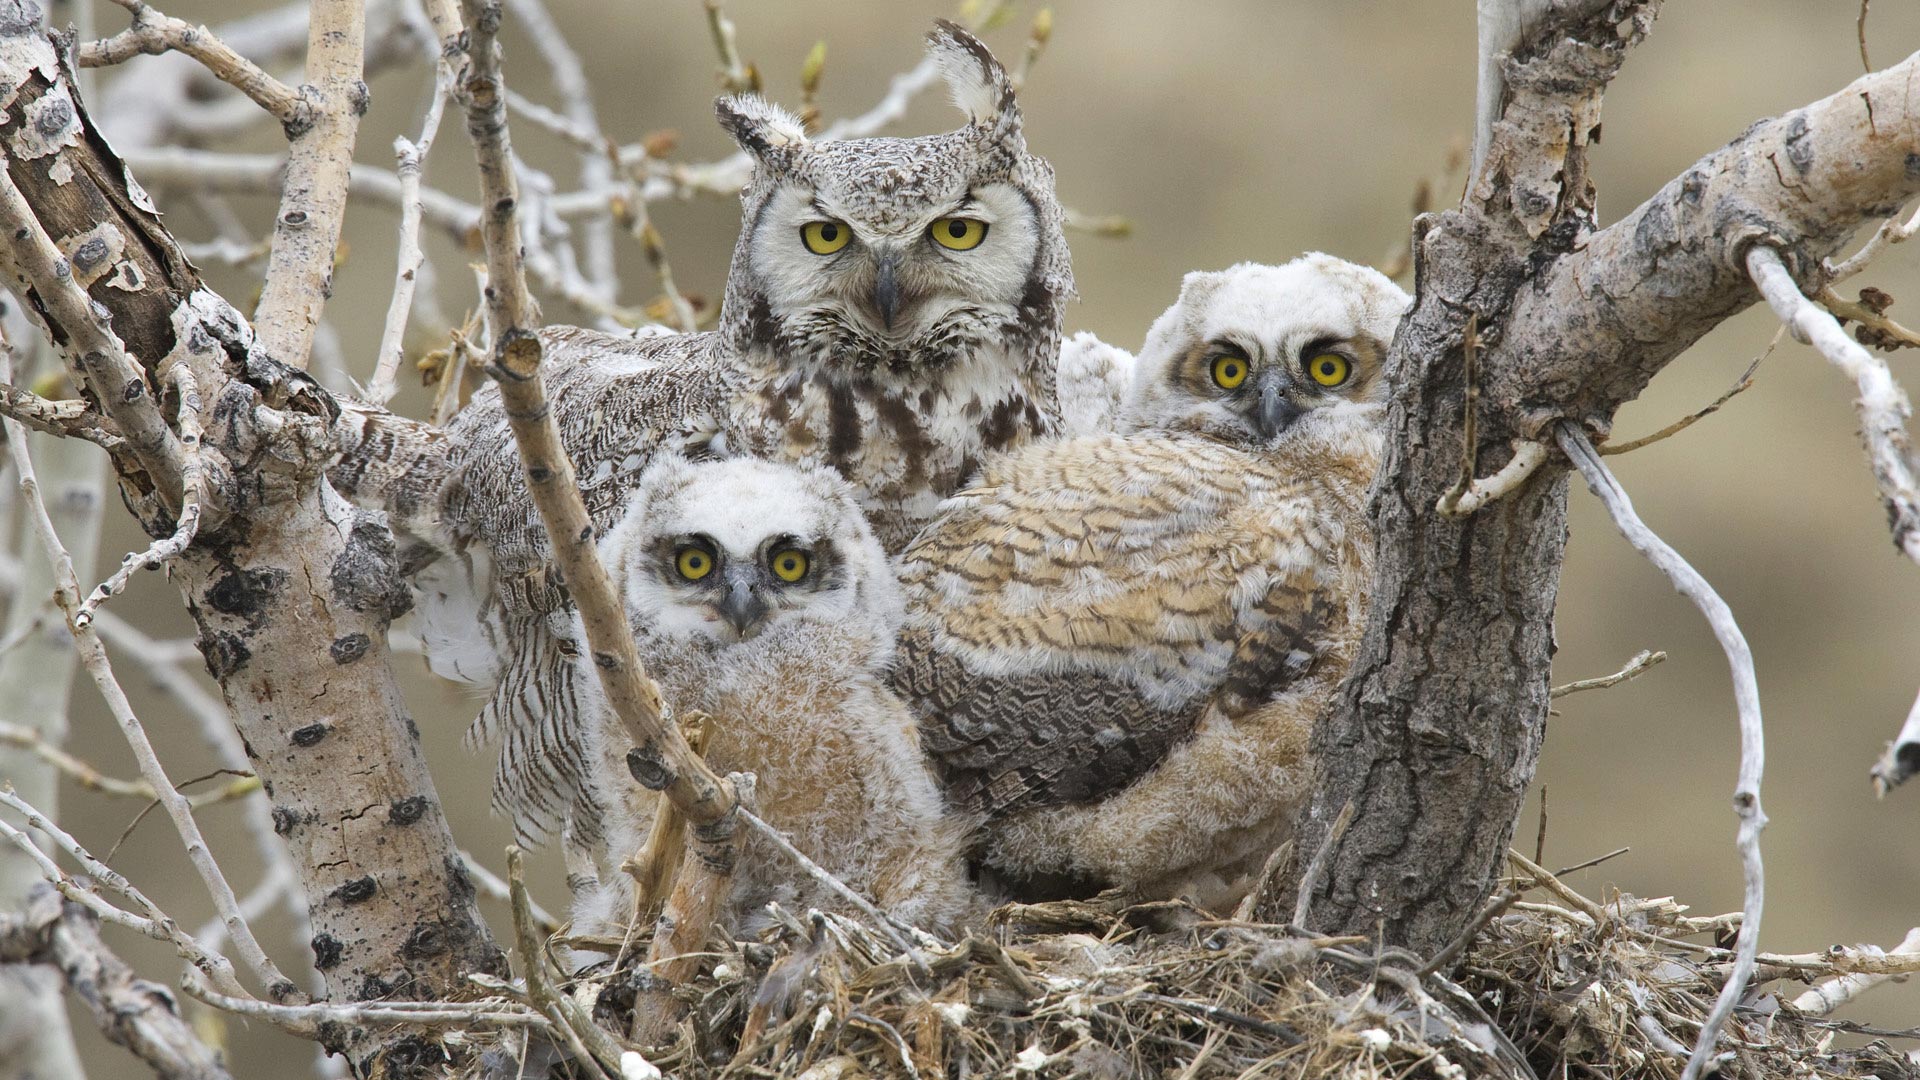 Nā kiʻi owls